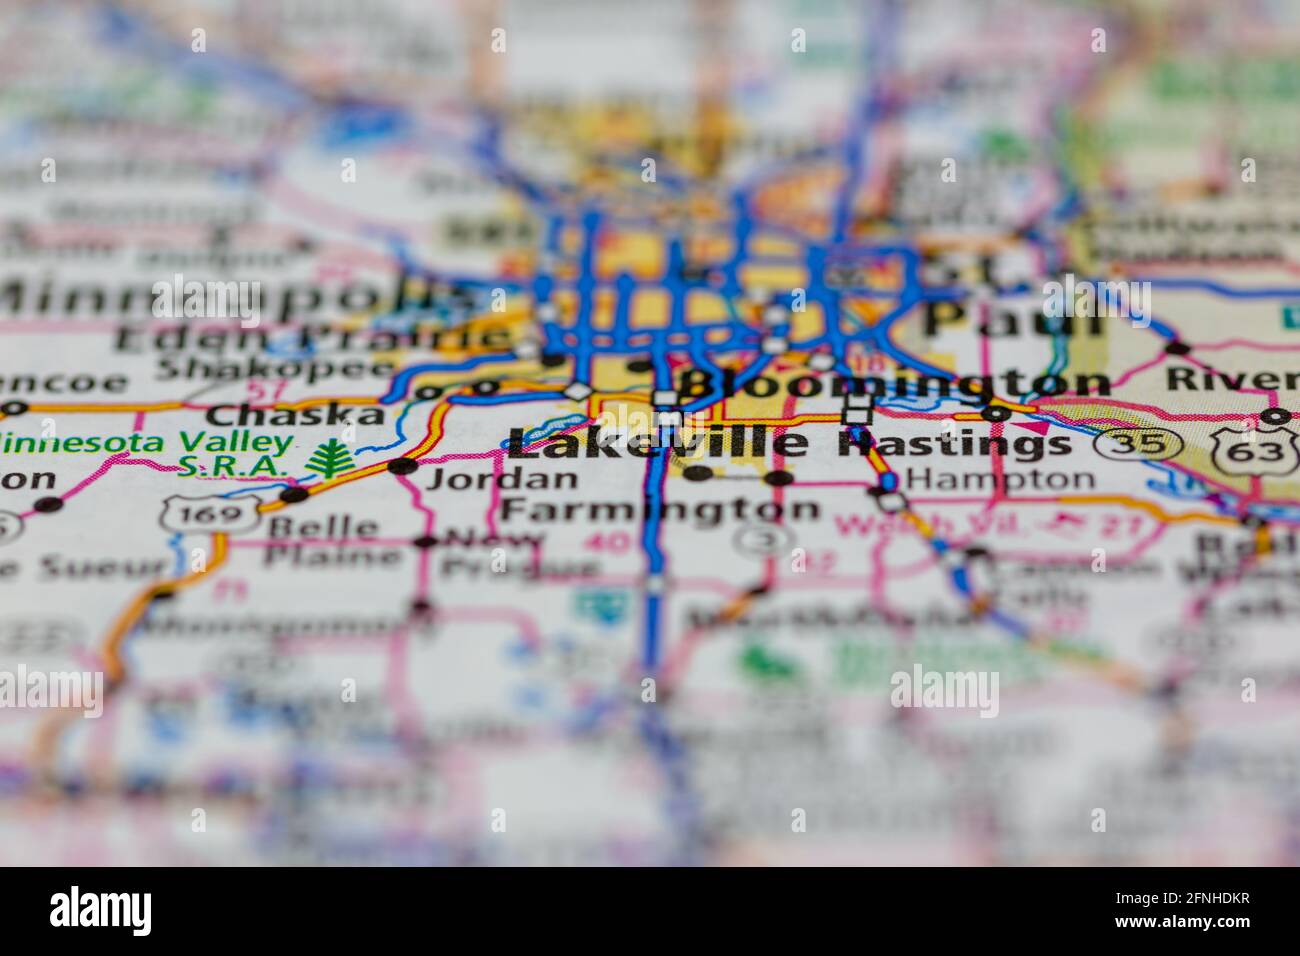 Lakeville Minnesota USA auf einer Geografie-Karte oder Straße angezeigt Karte Stockfoto